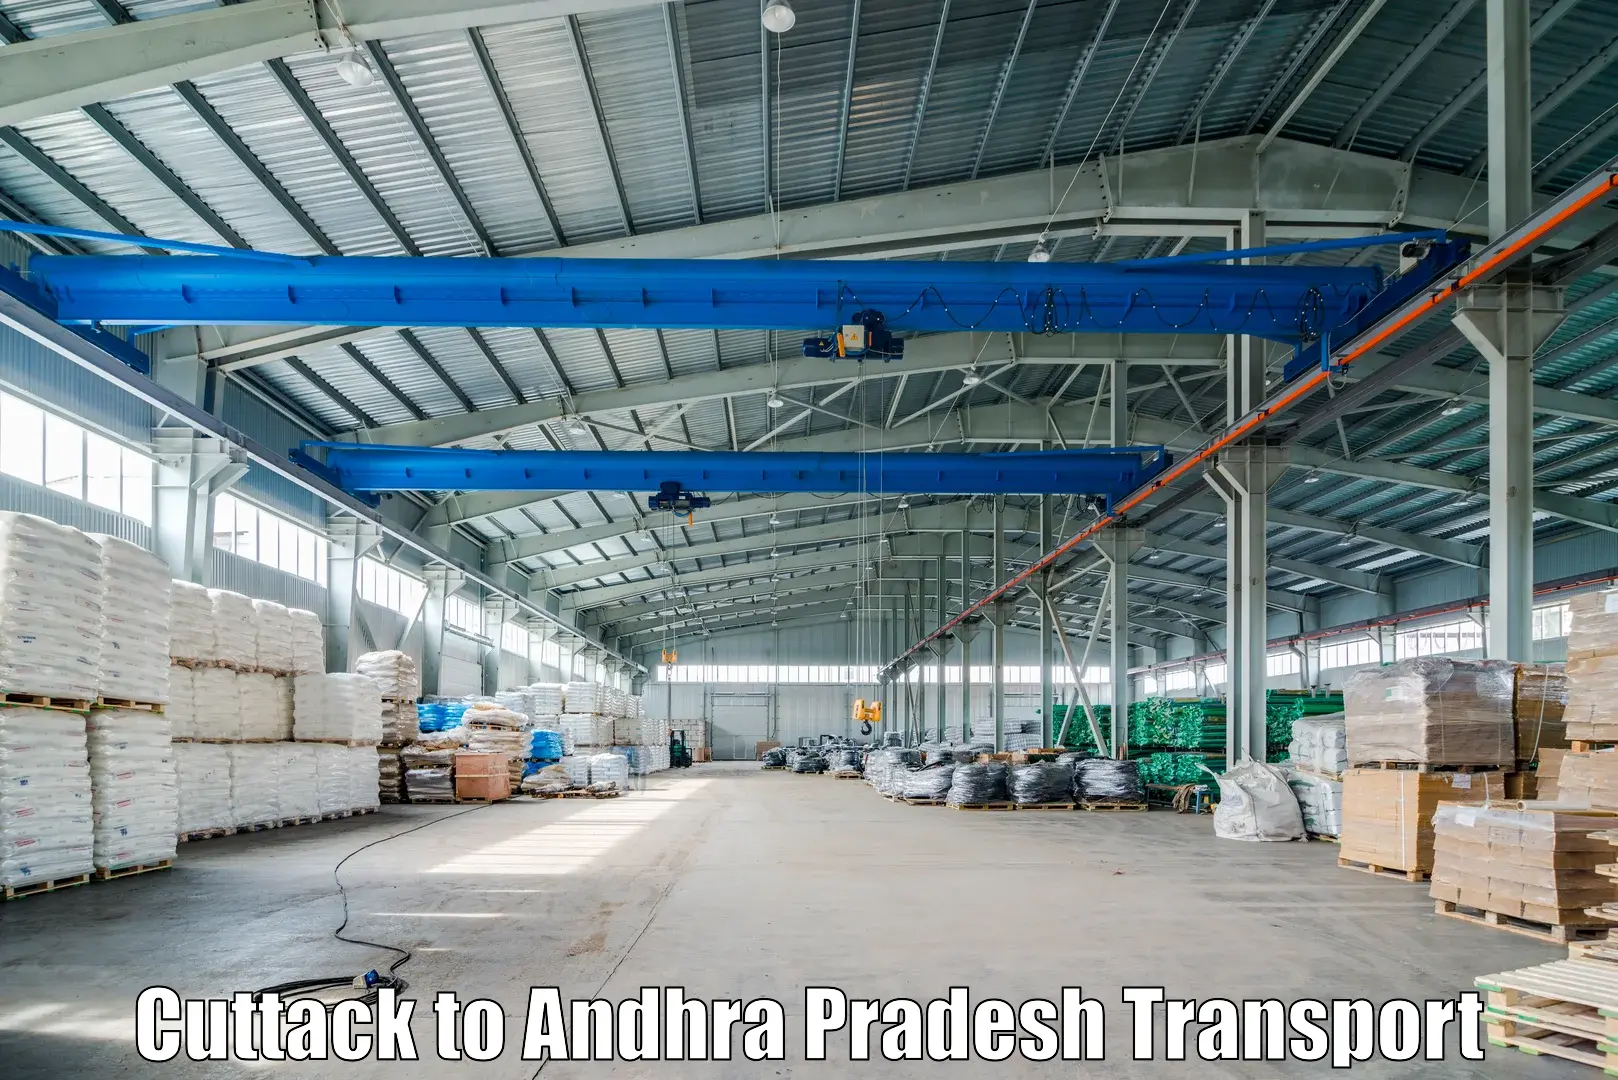 Truck transport companies in India in Cuttack to Vuyyuru